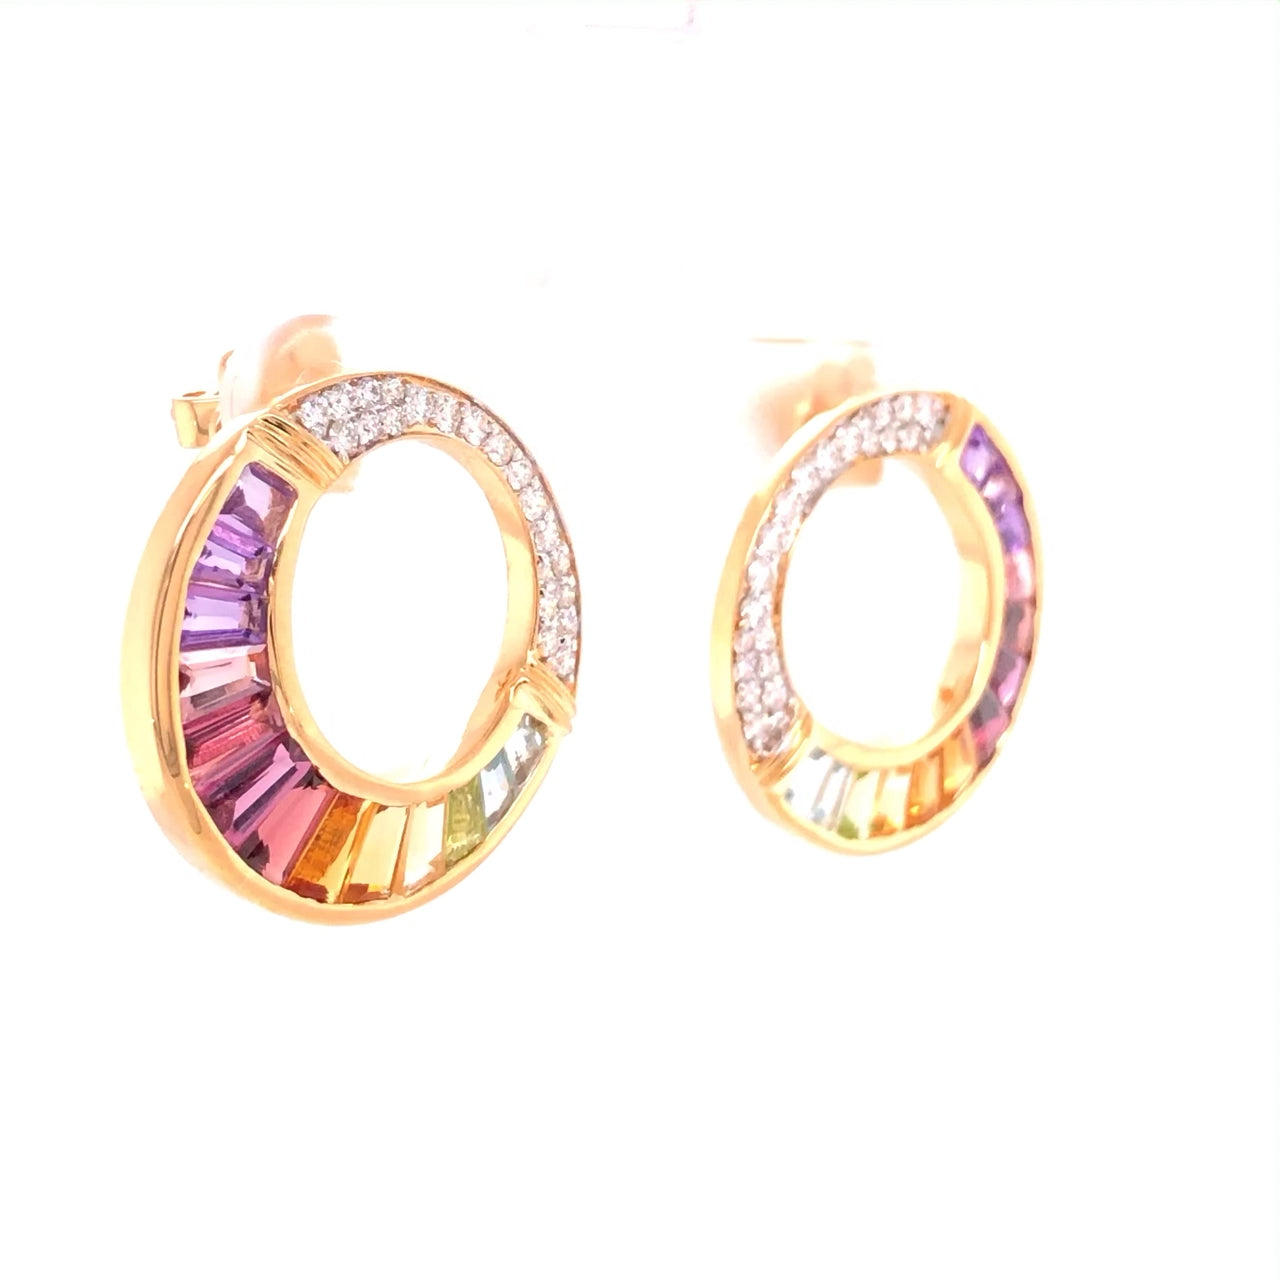 Buy 18K gold rainbow circular stud earrings online